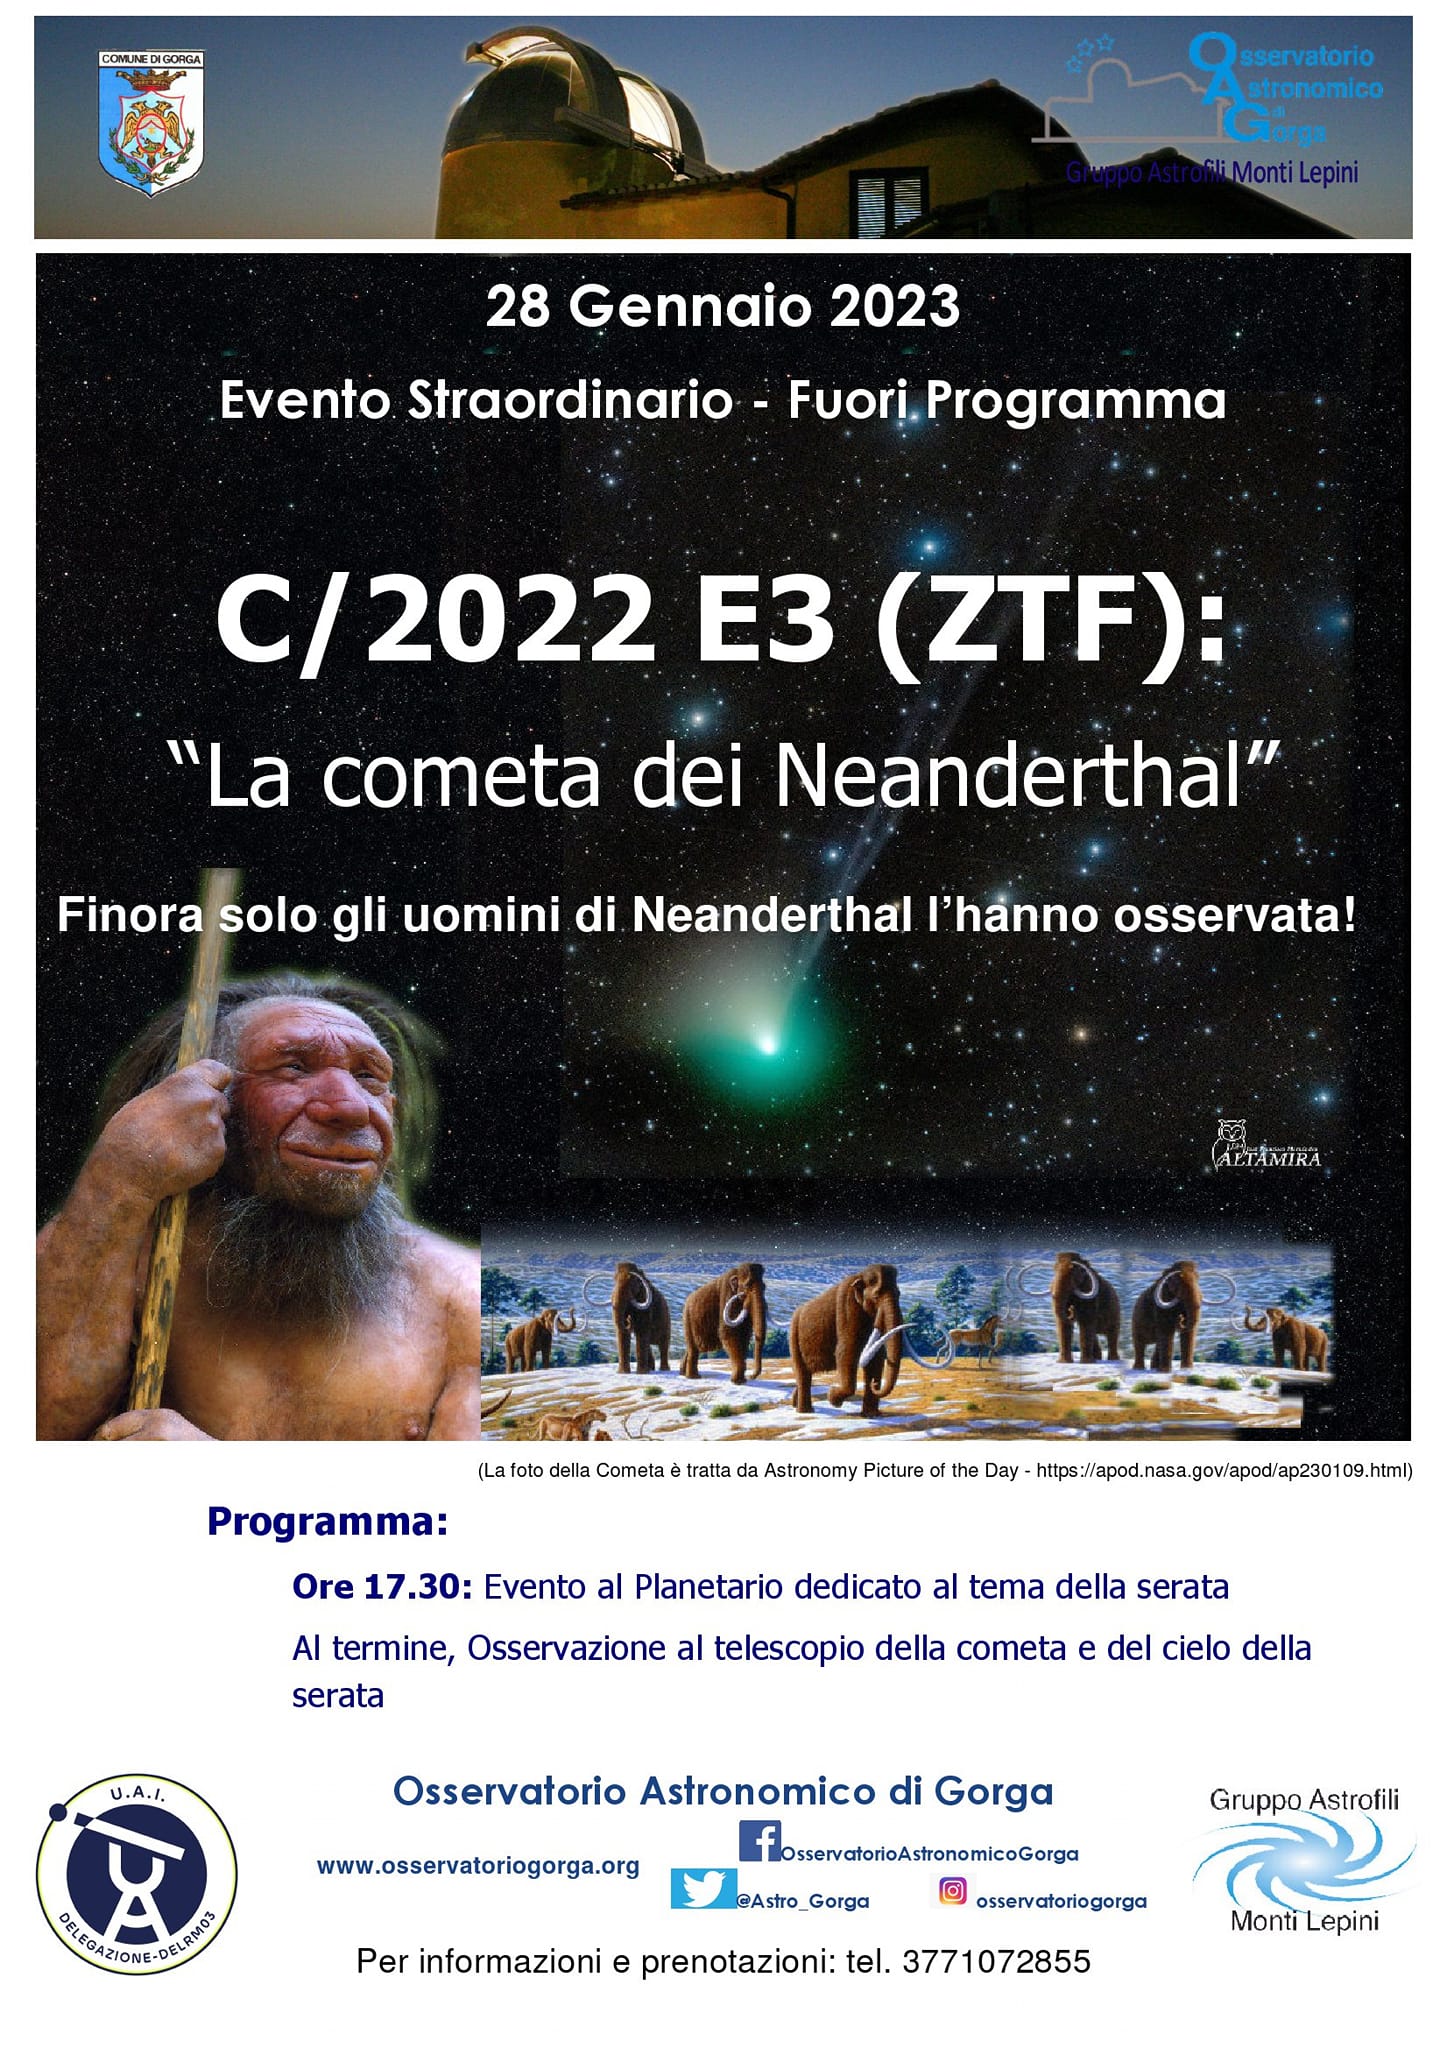 Gorga: La Cometa dei Neanderthal @ Gorga